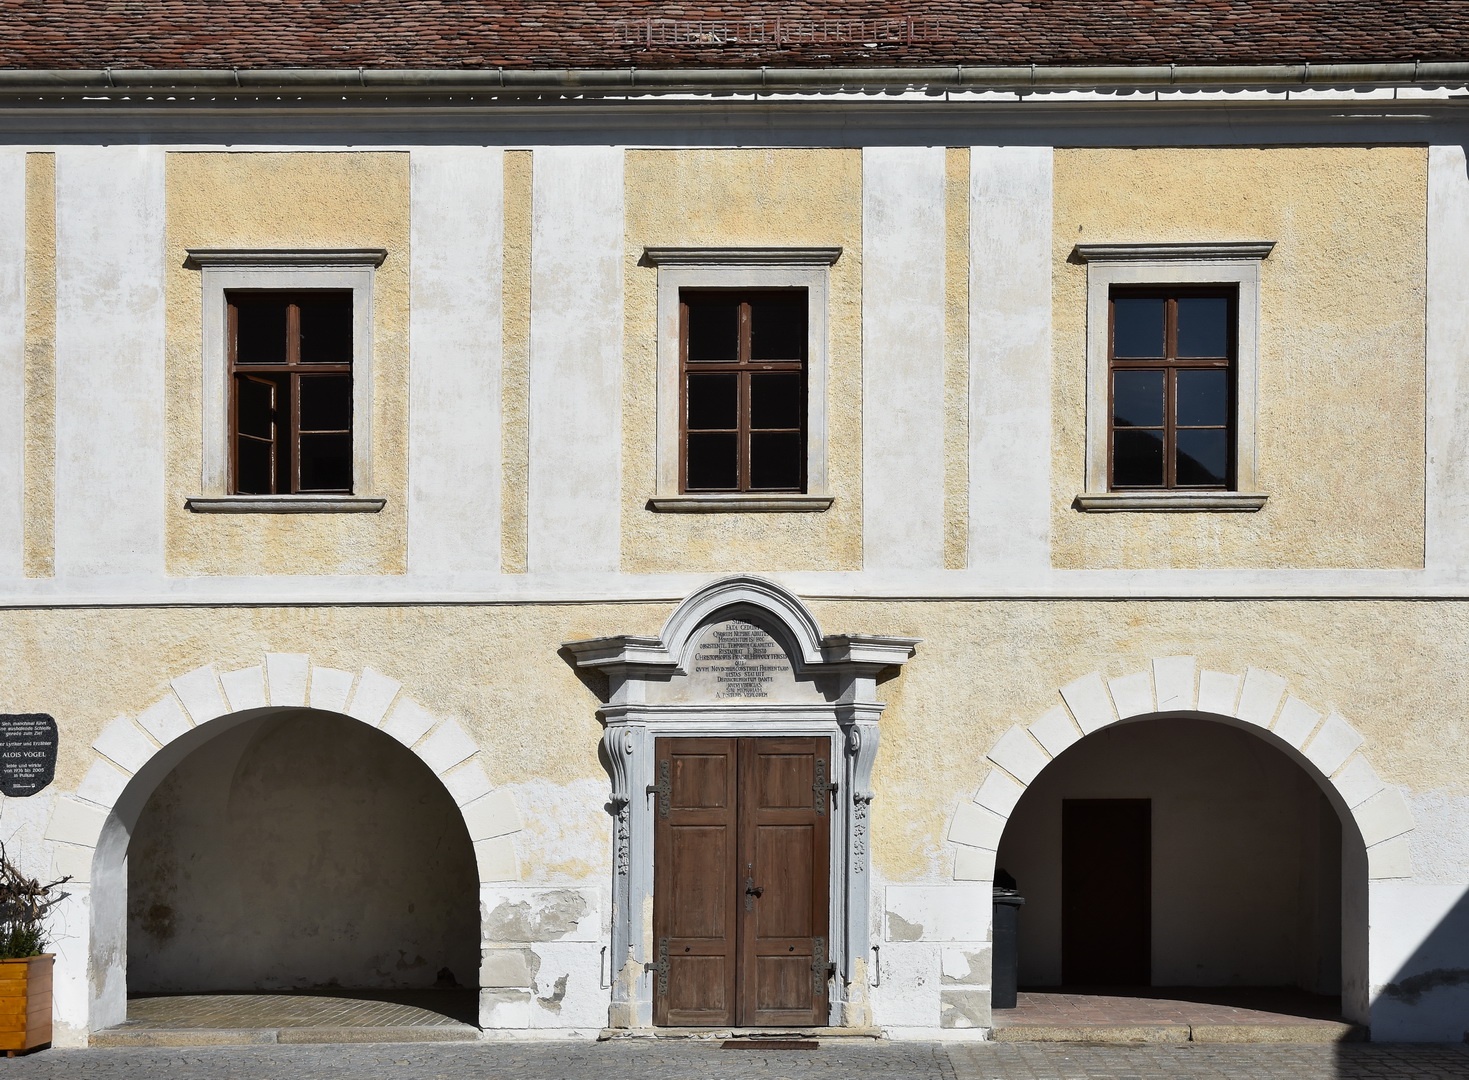 Pulkau (Niederösterreich), Pöltingerhof 1709